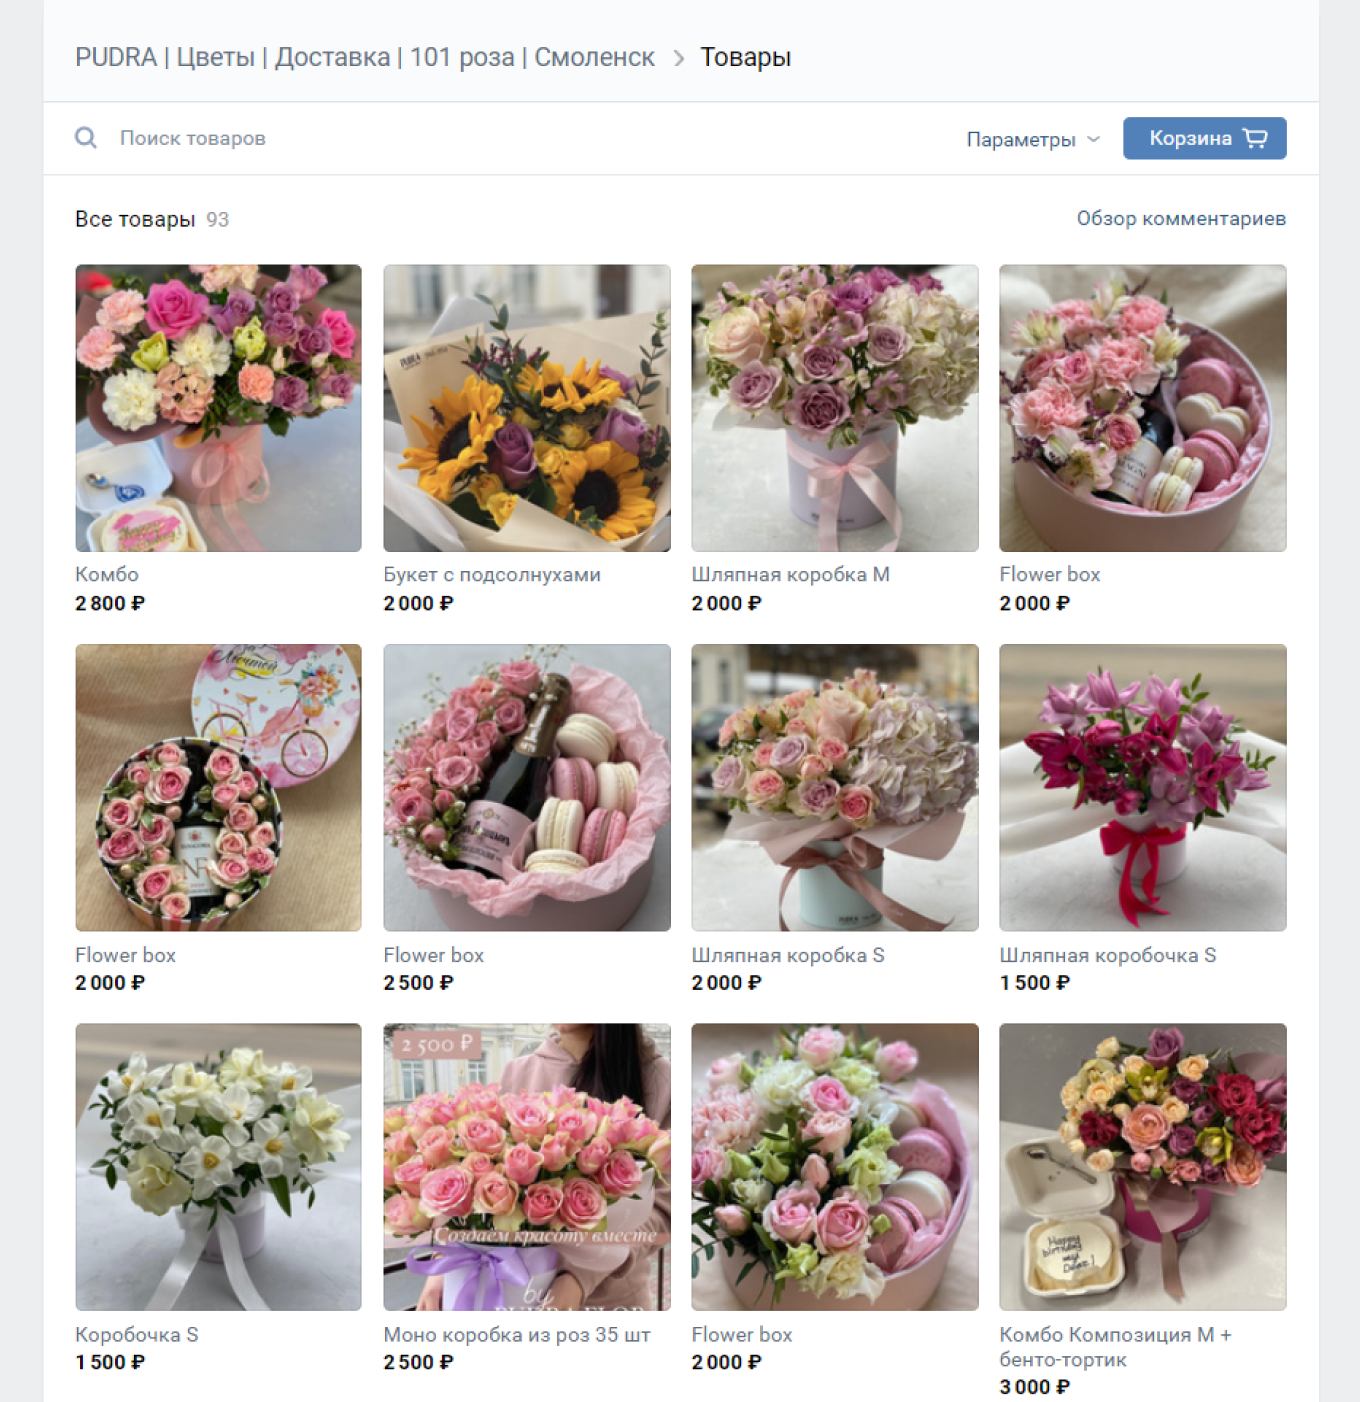 Купить цветы с доставкой в Нижнем Новгороде